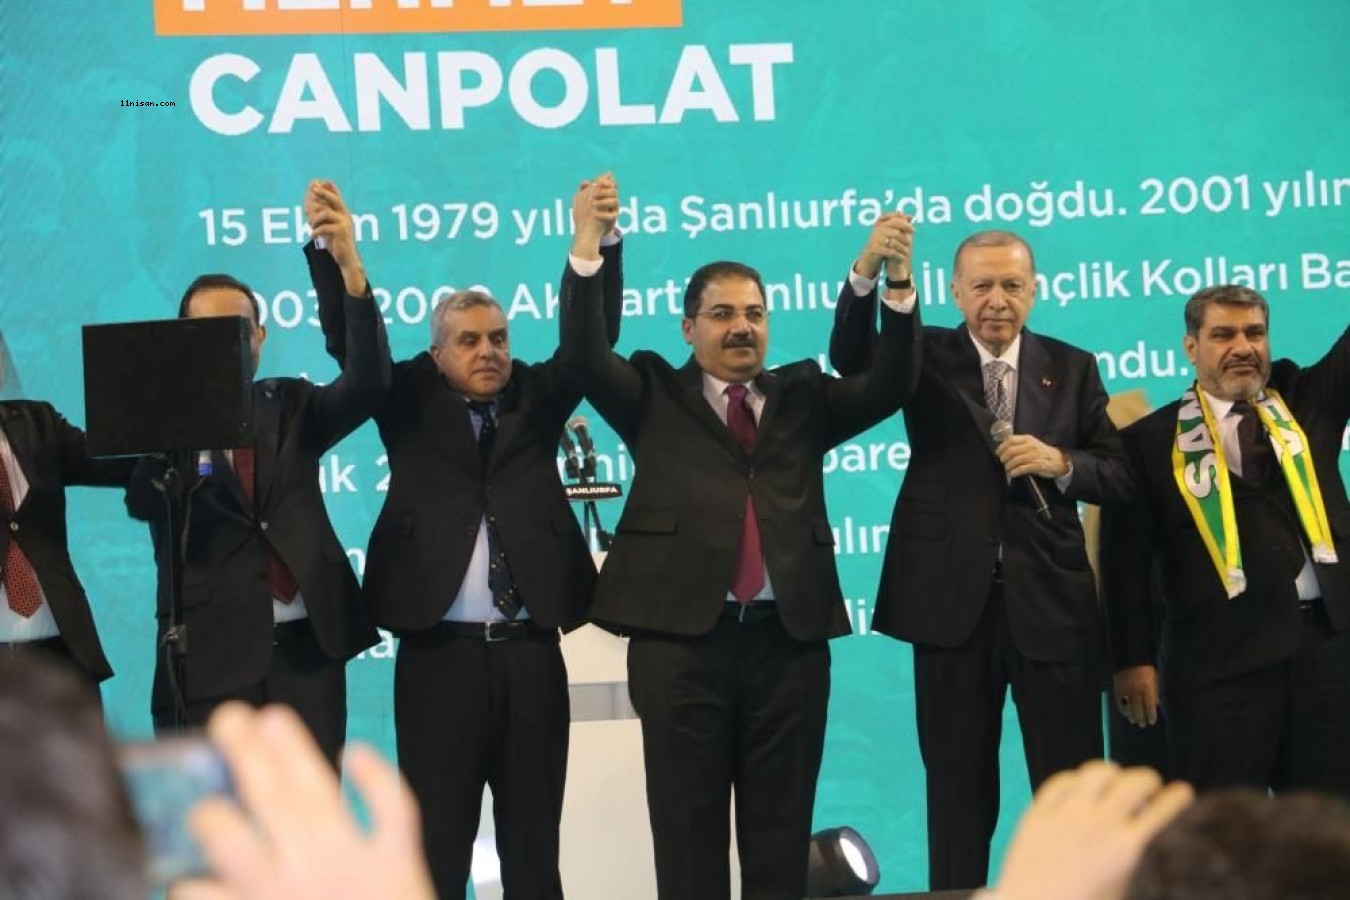 Haliliye Belediye Başkanı Mehmet Canpolat’a büyük ilgi;